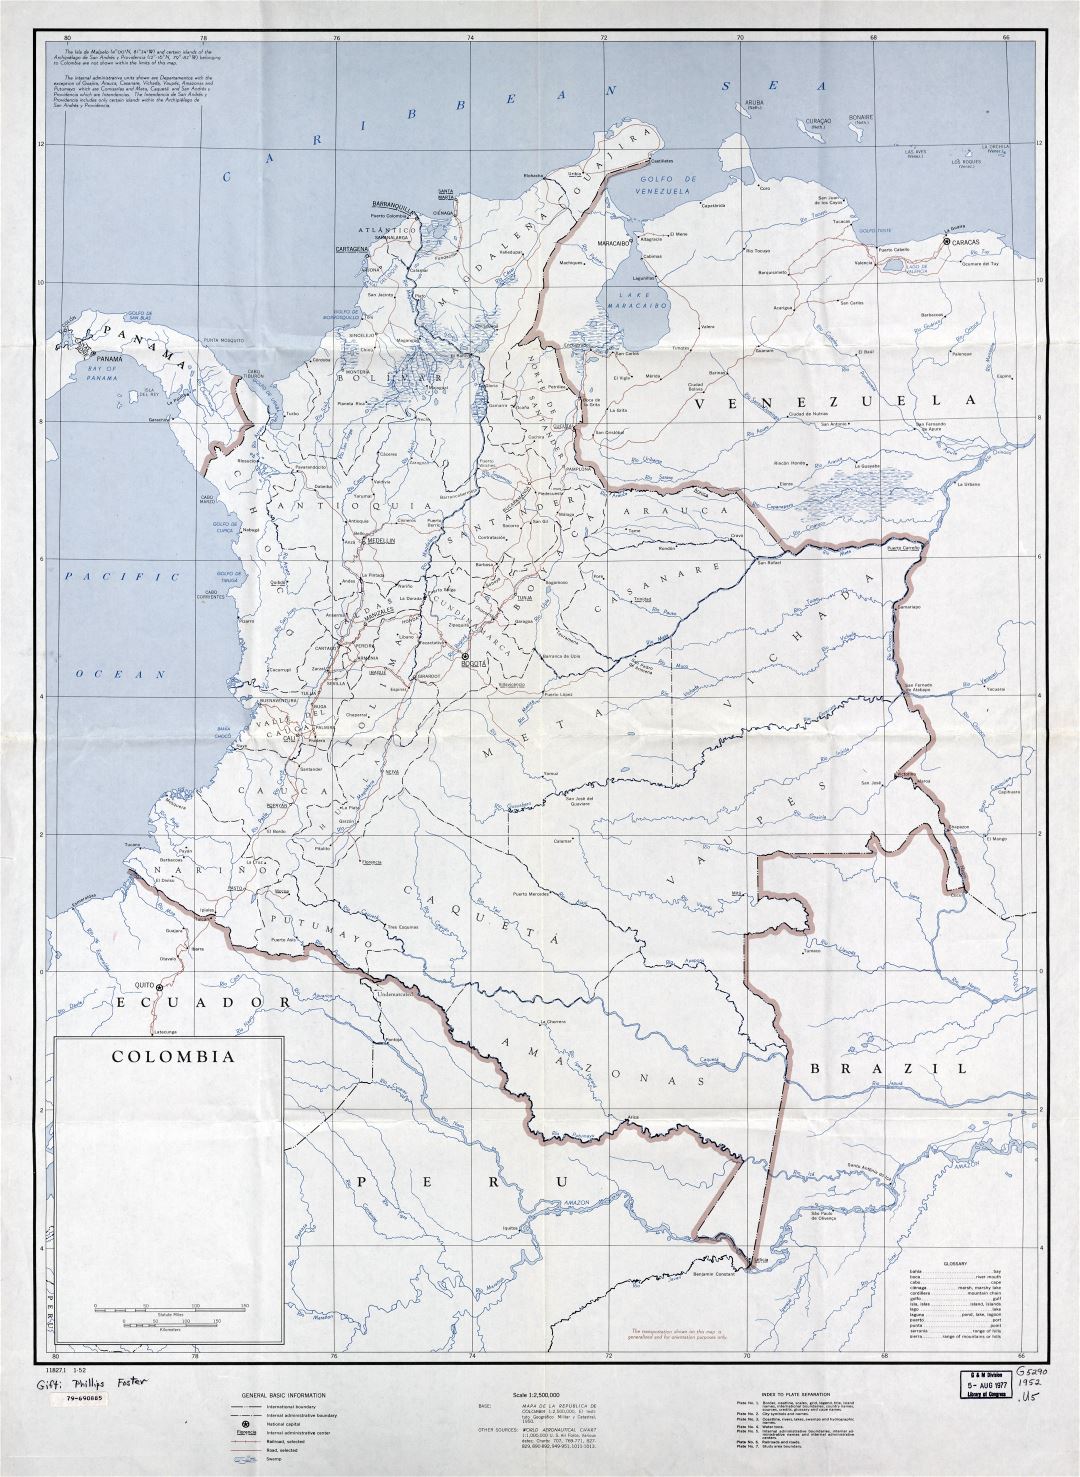 Большая подробная политическая и административная карта Колумбии с пометками городов, дорог и железных дорог - 1952